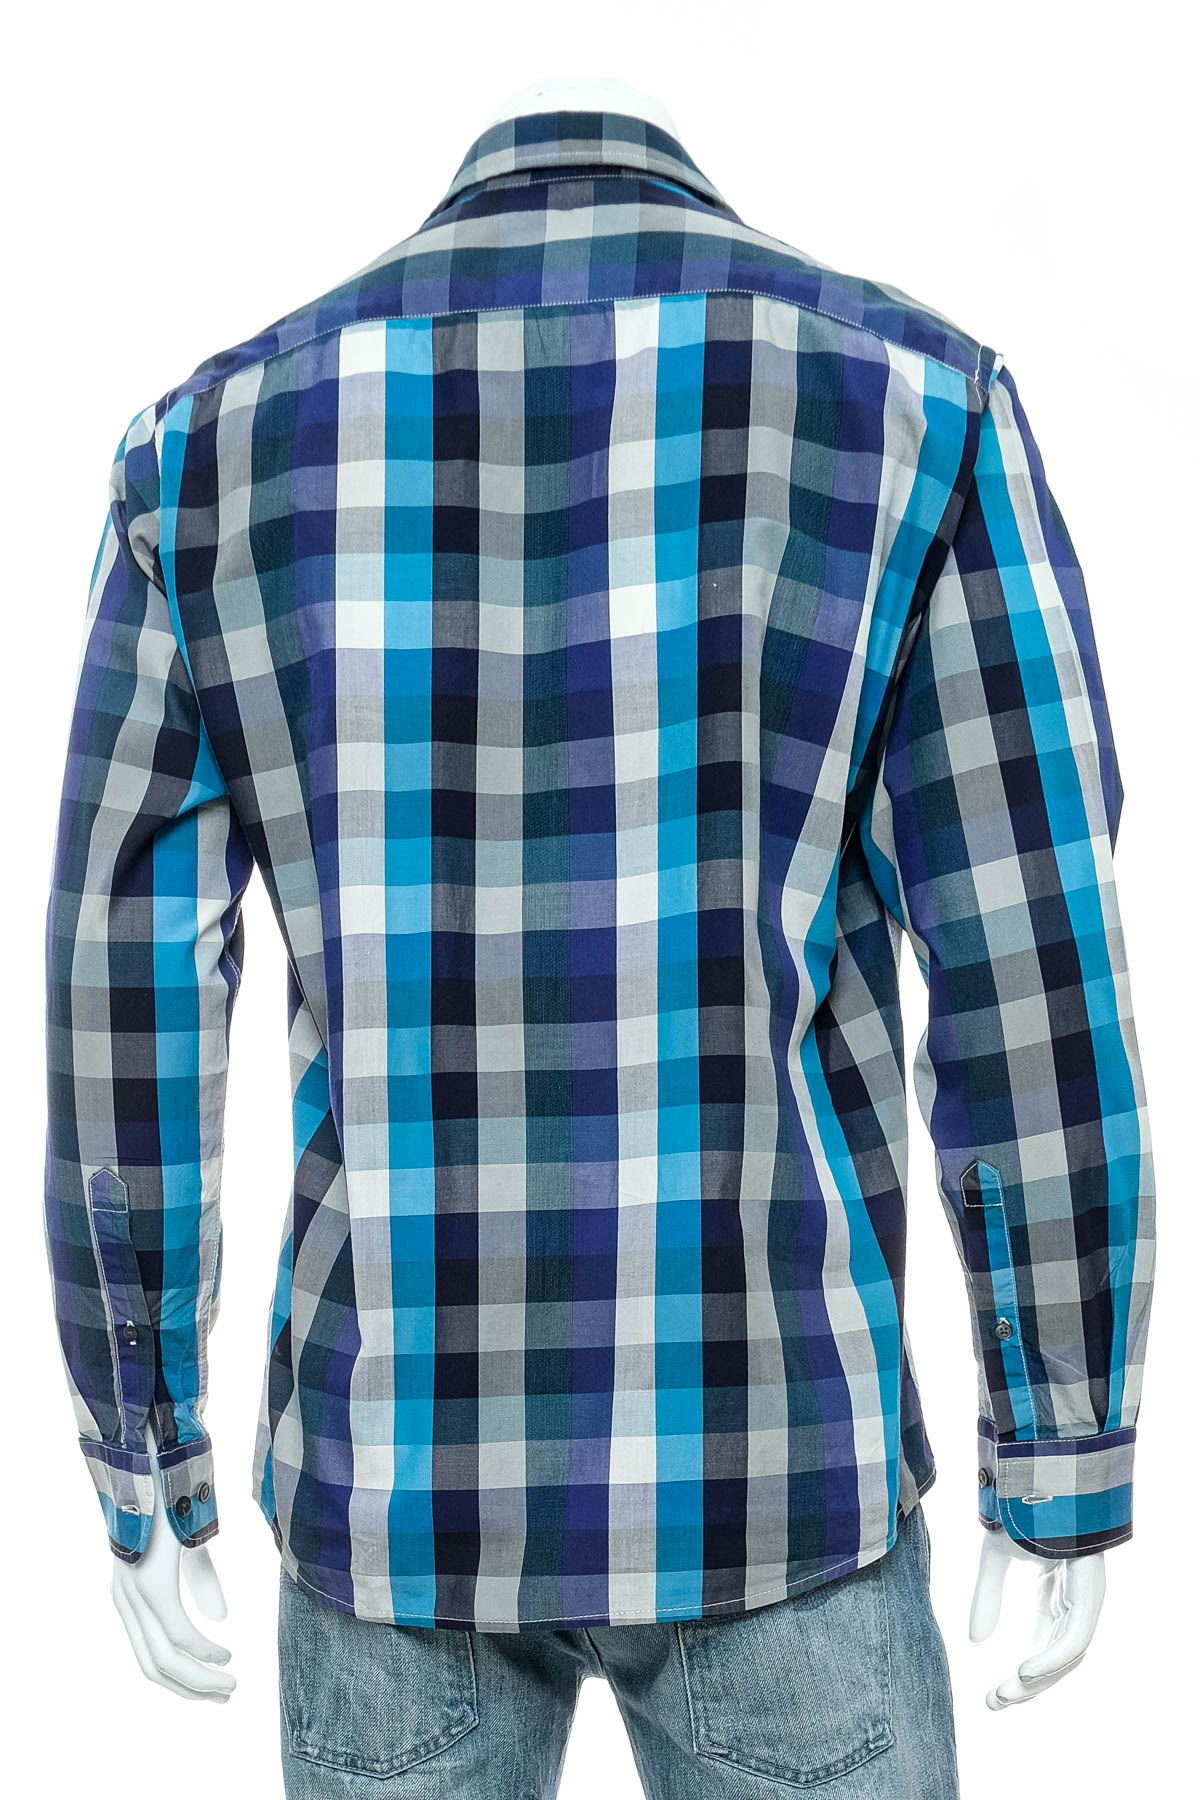 Ανδρικό πουκάμισο - Hatico Sport - 1